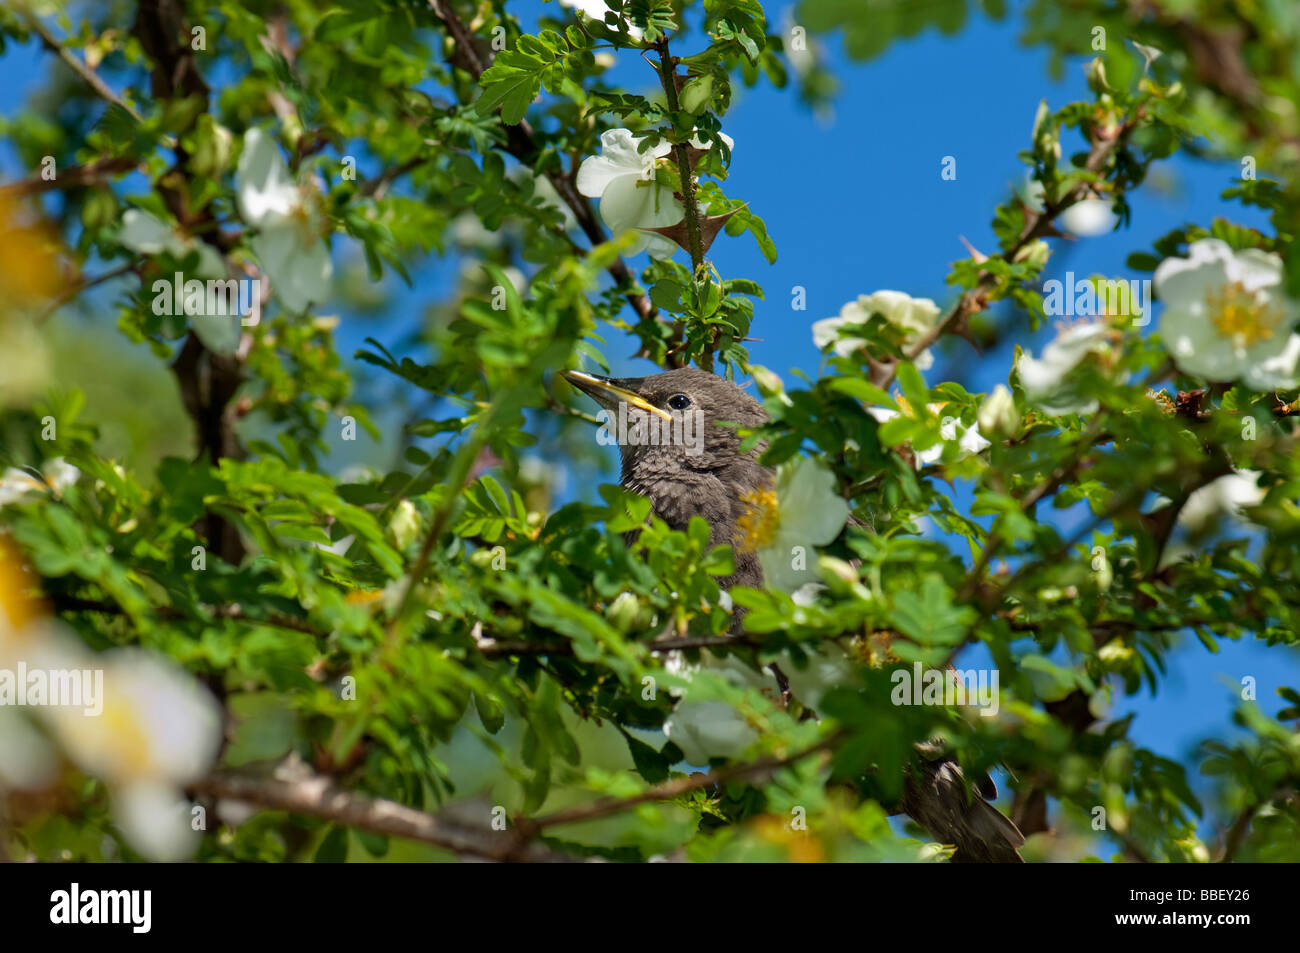 Printemps jeune oiseau noir blackbird Turdus merula eurasien sittin dans un arbre bush floraison printemps ensoleillé soleil chant chanter Banque D'Images